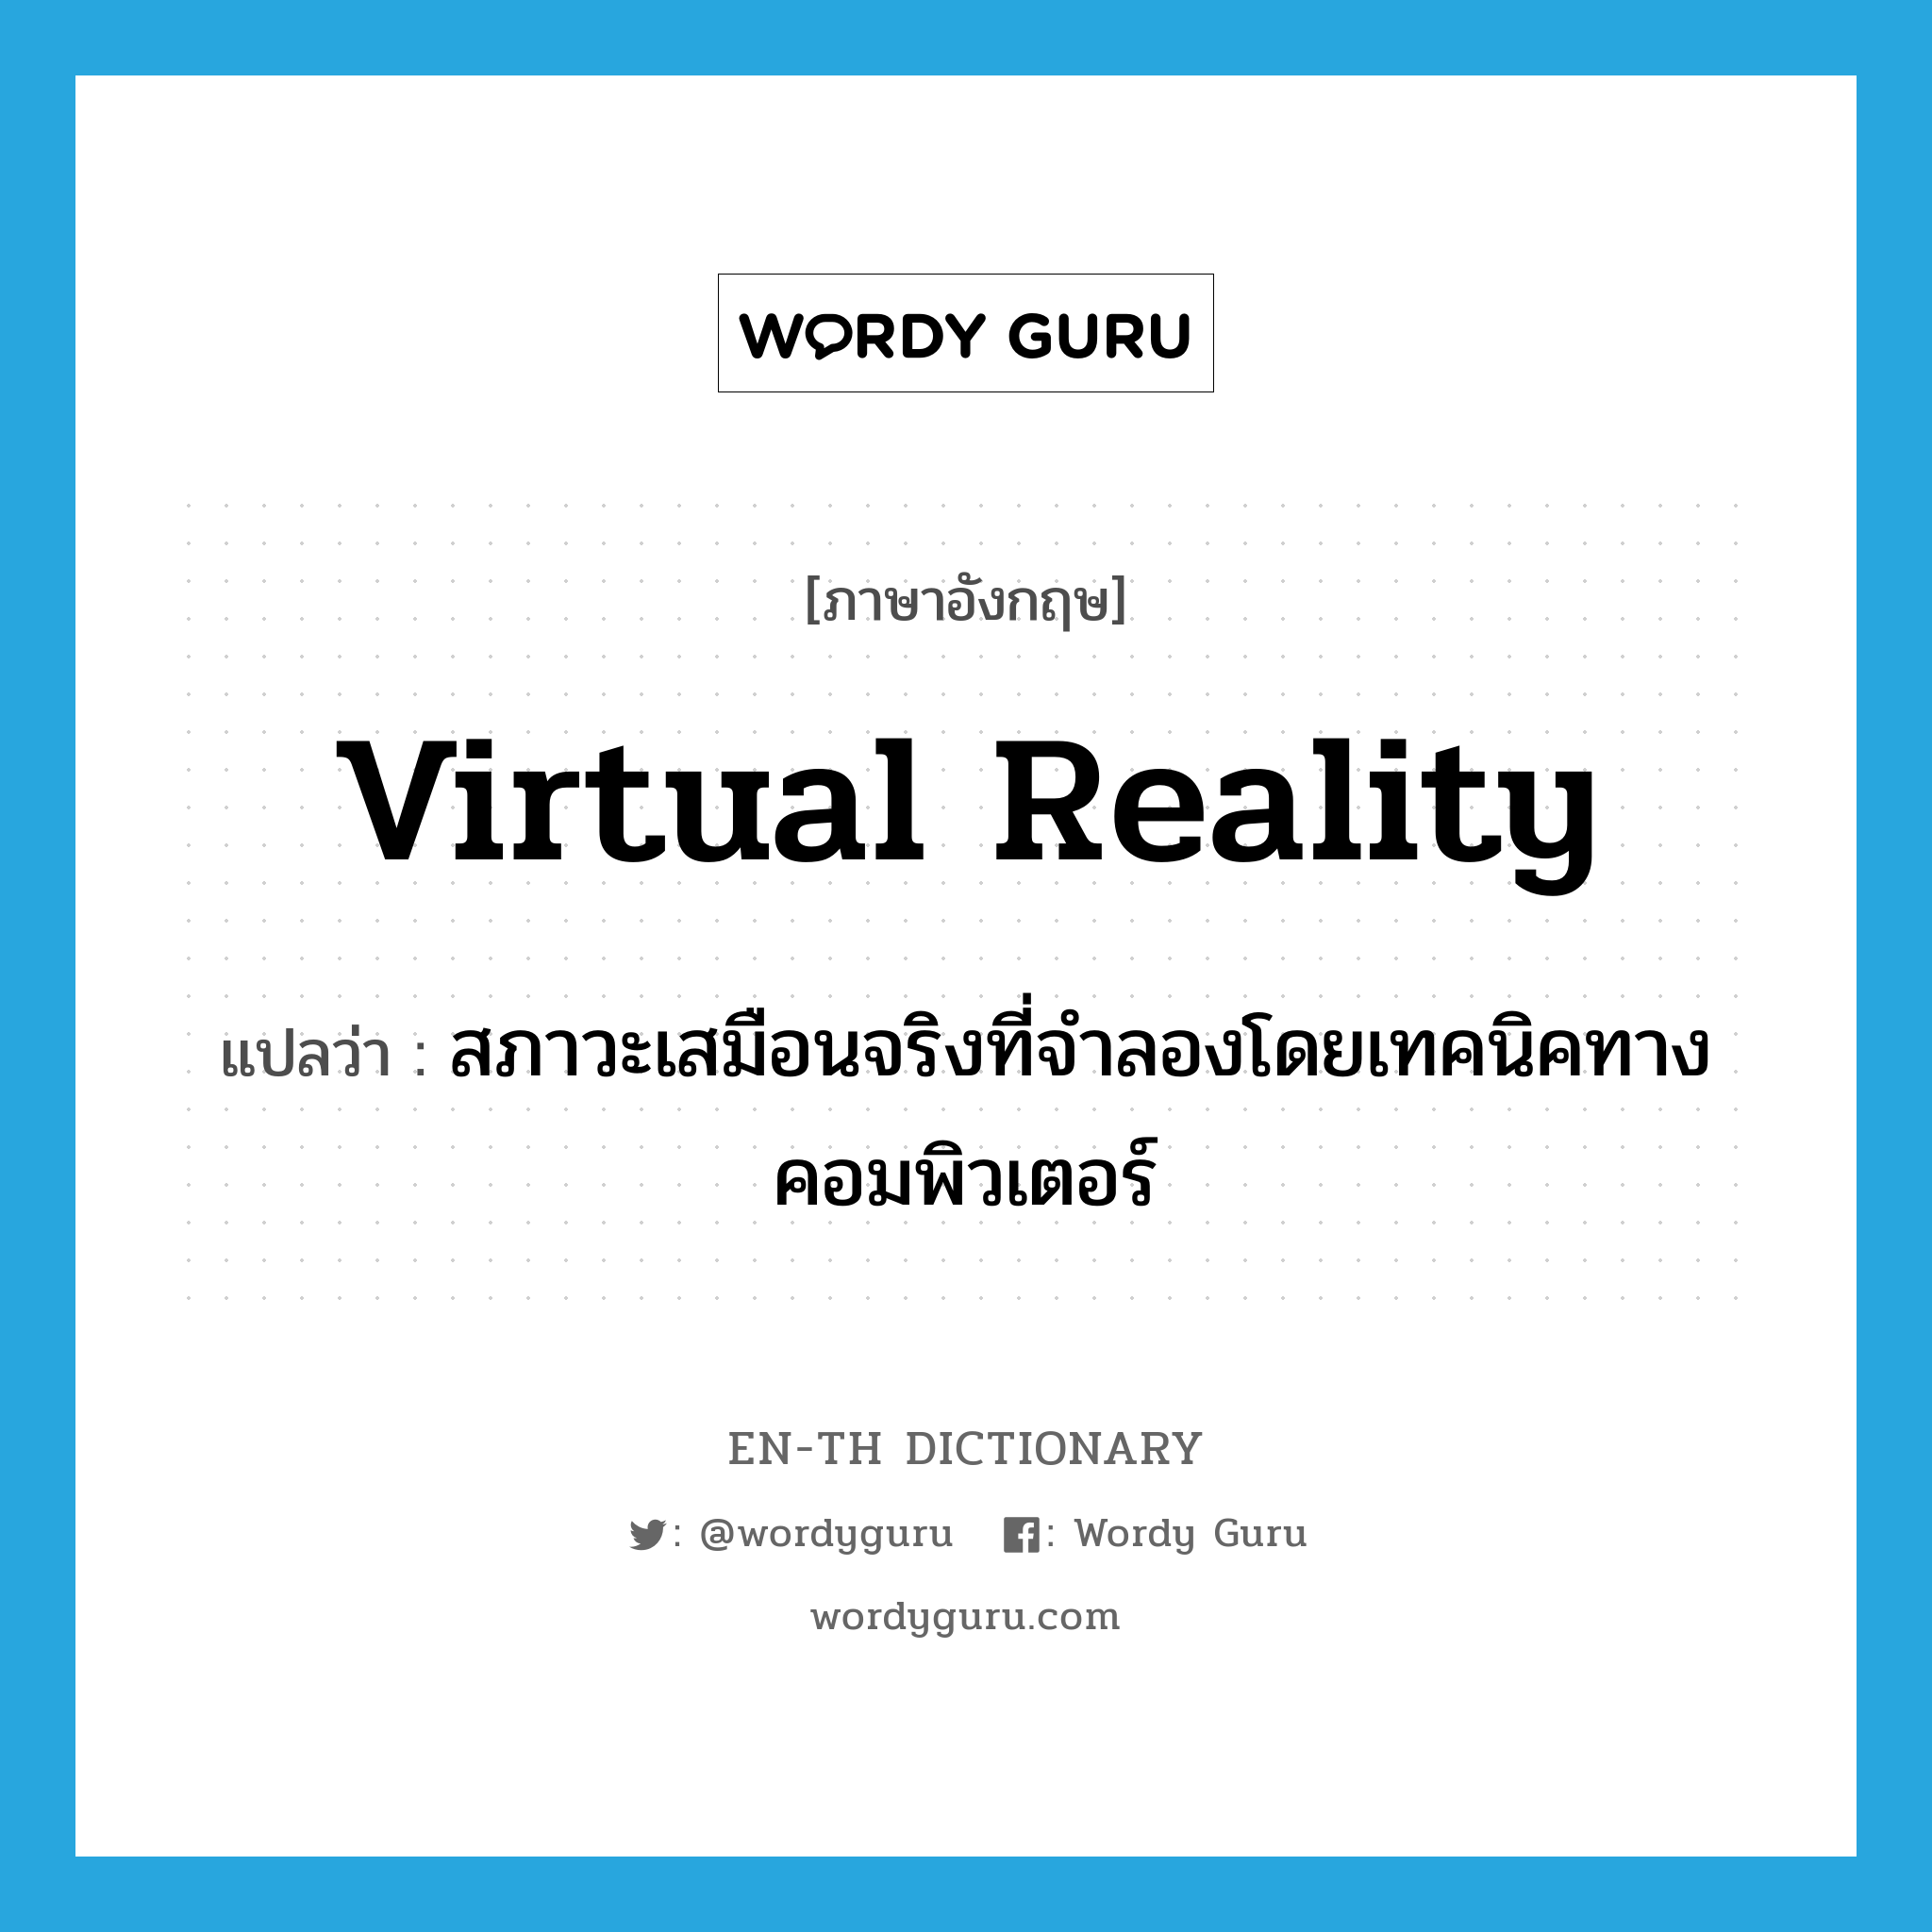 virtual reality แปลว่า?, คำศัพท์ภาษาอังกฤษ virtual reality แปลว่า สภาวะเสมือนจริงที่จำลองโดยเทคนิคทางคอมพิวเตอร์ ประเภท N หมวด N